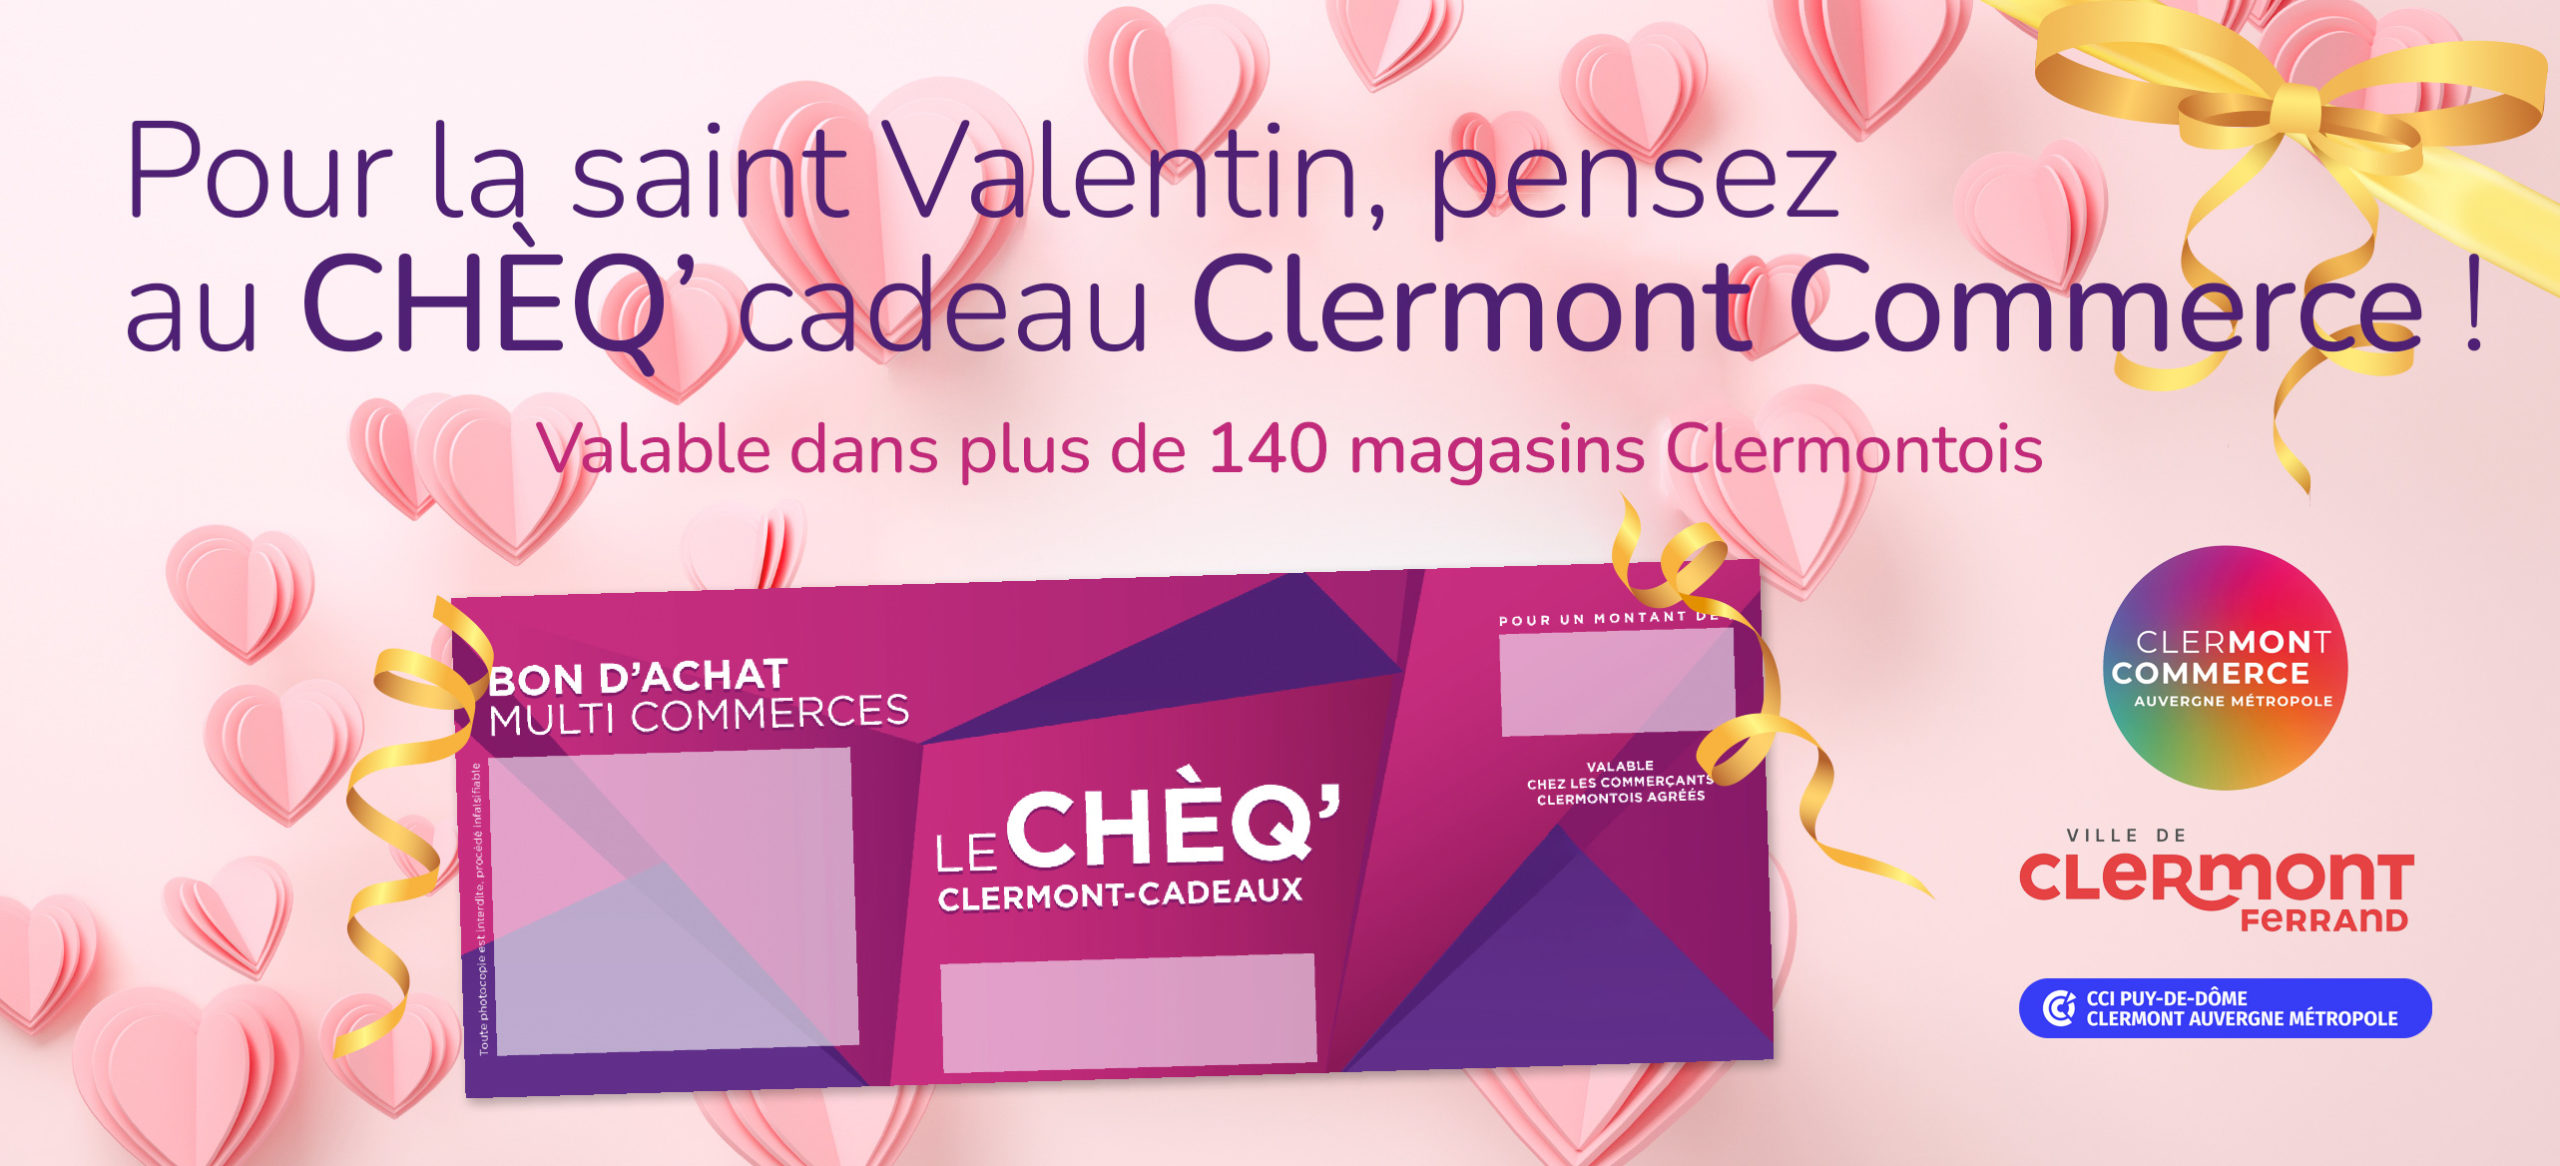 cheque cadeau clermont commerce saint valentin